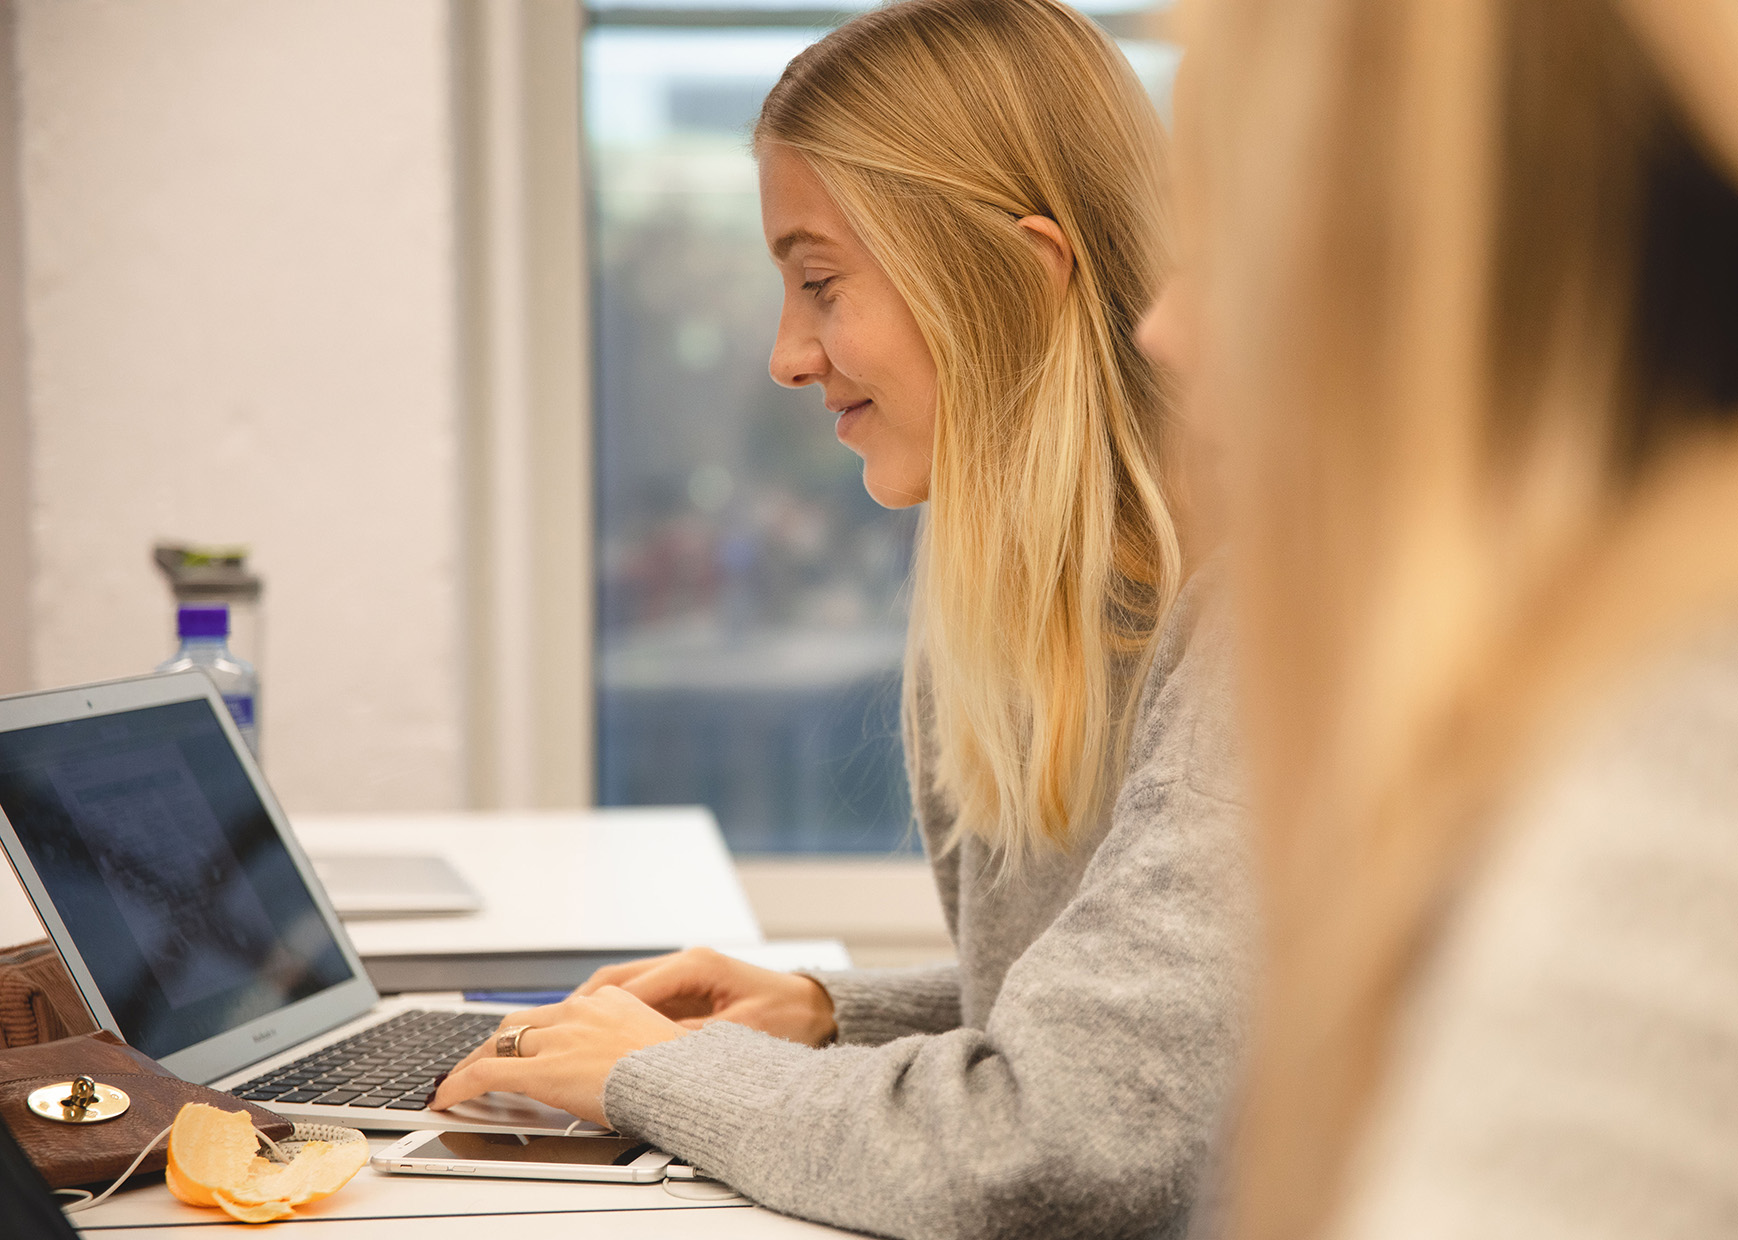 Bilde av ung kvinne med blondt hår som sitter foran en laptop.